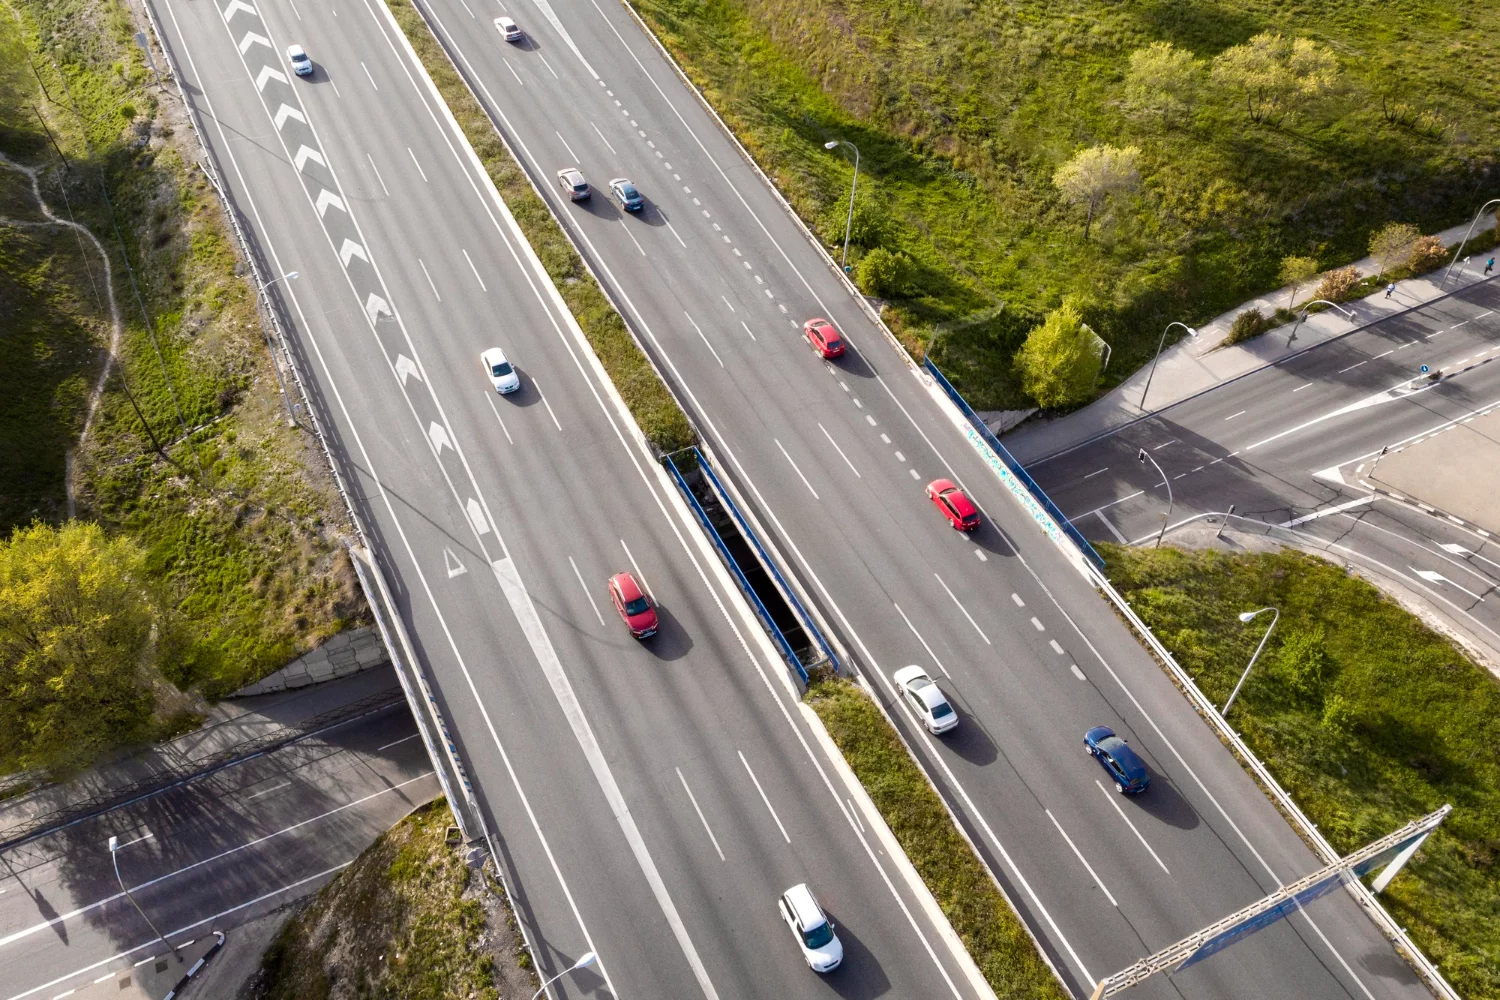 Infrastructures routières et popularité des véhicules de voyage : Adaptation des routes, entretien et services disponibles sur les axes routiers